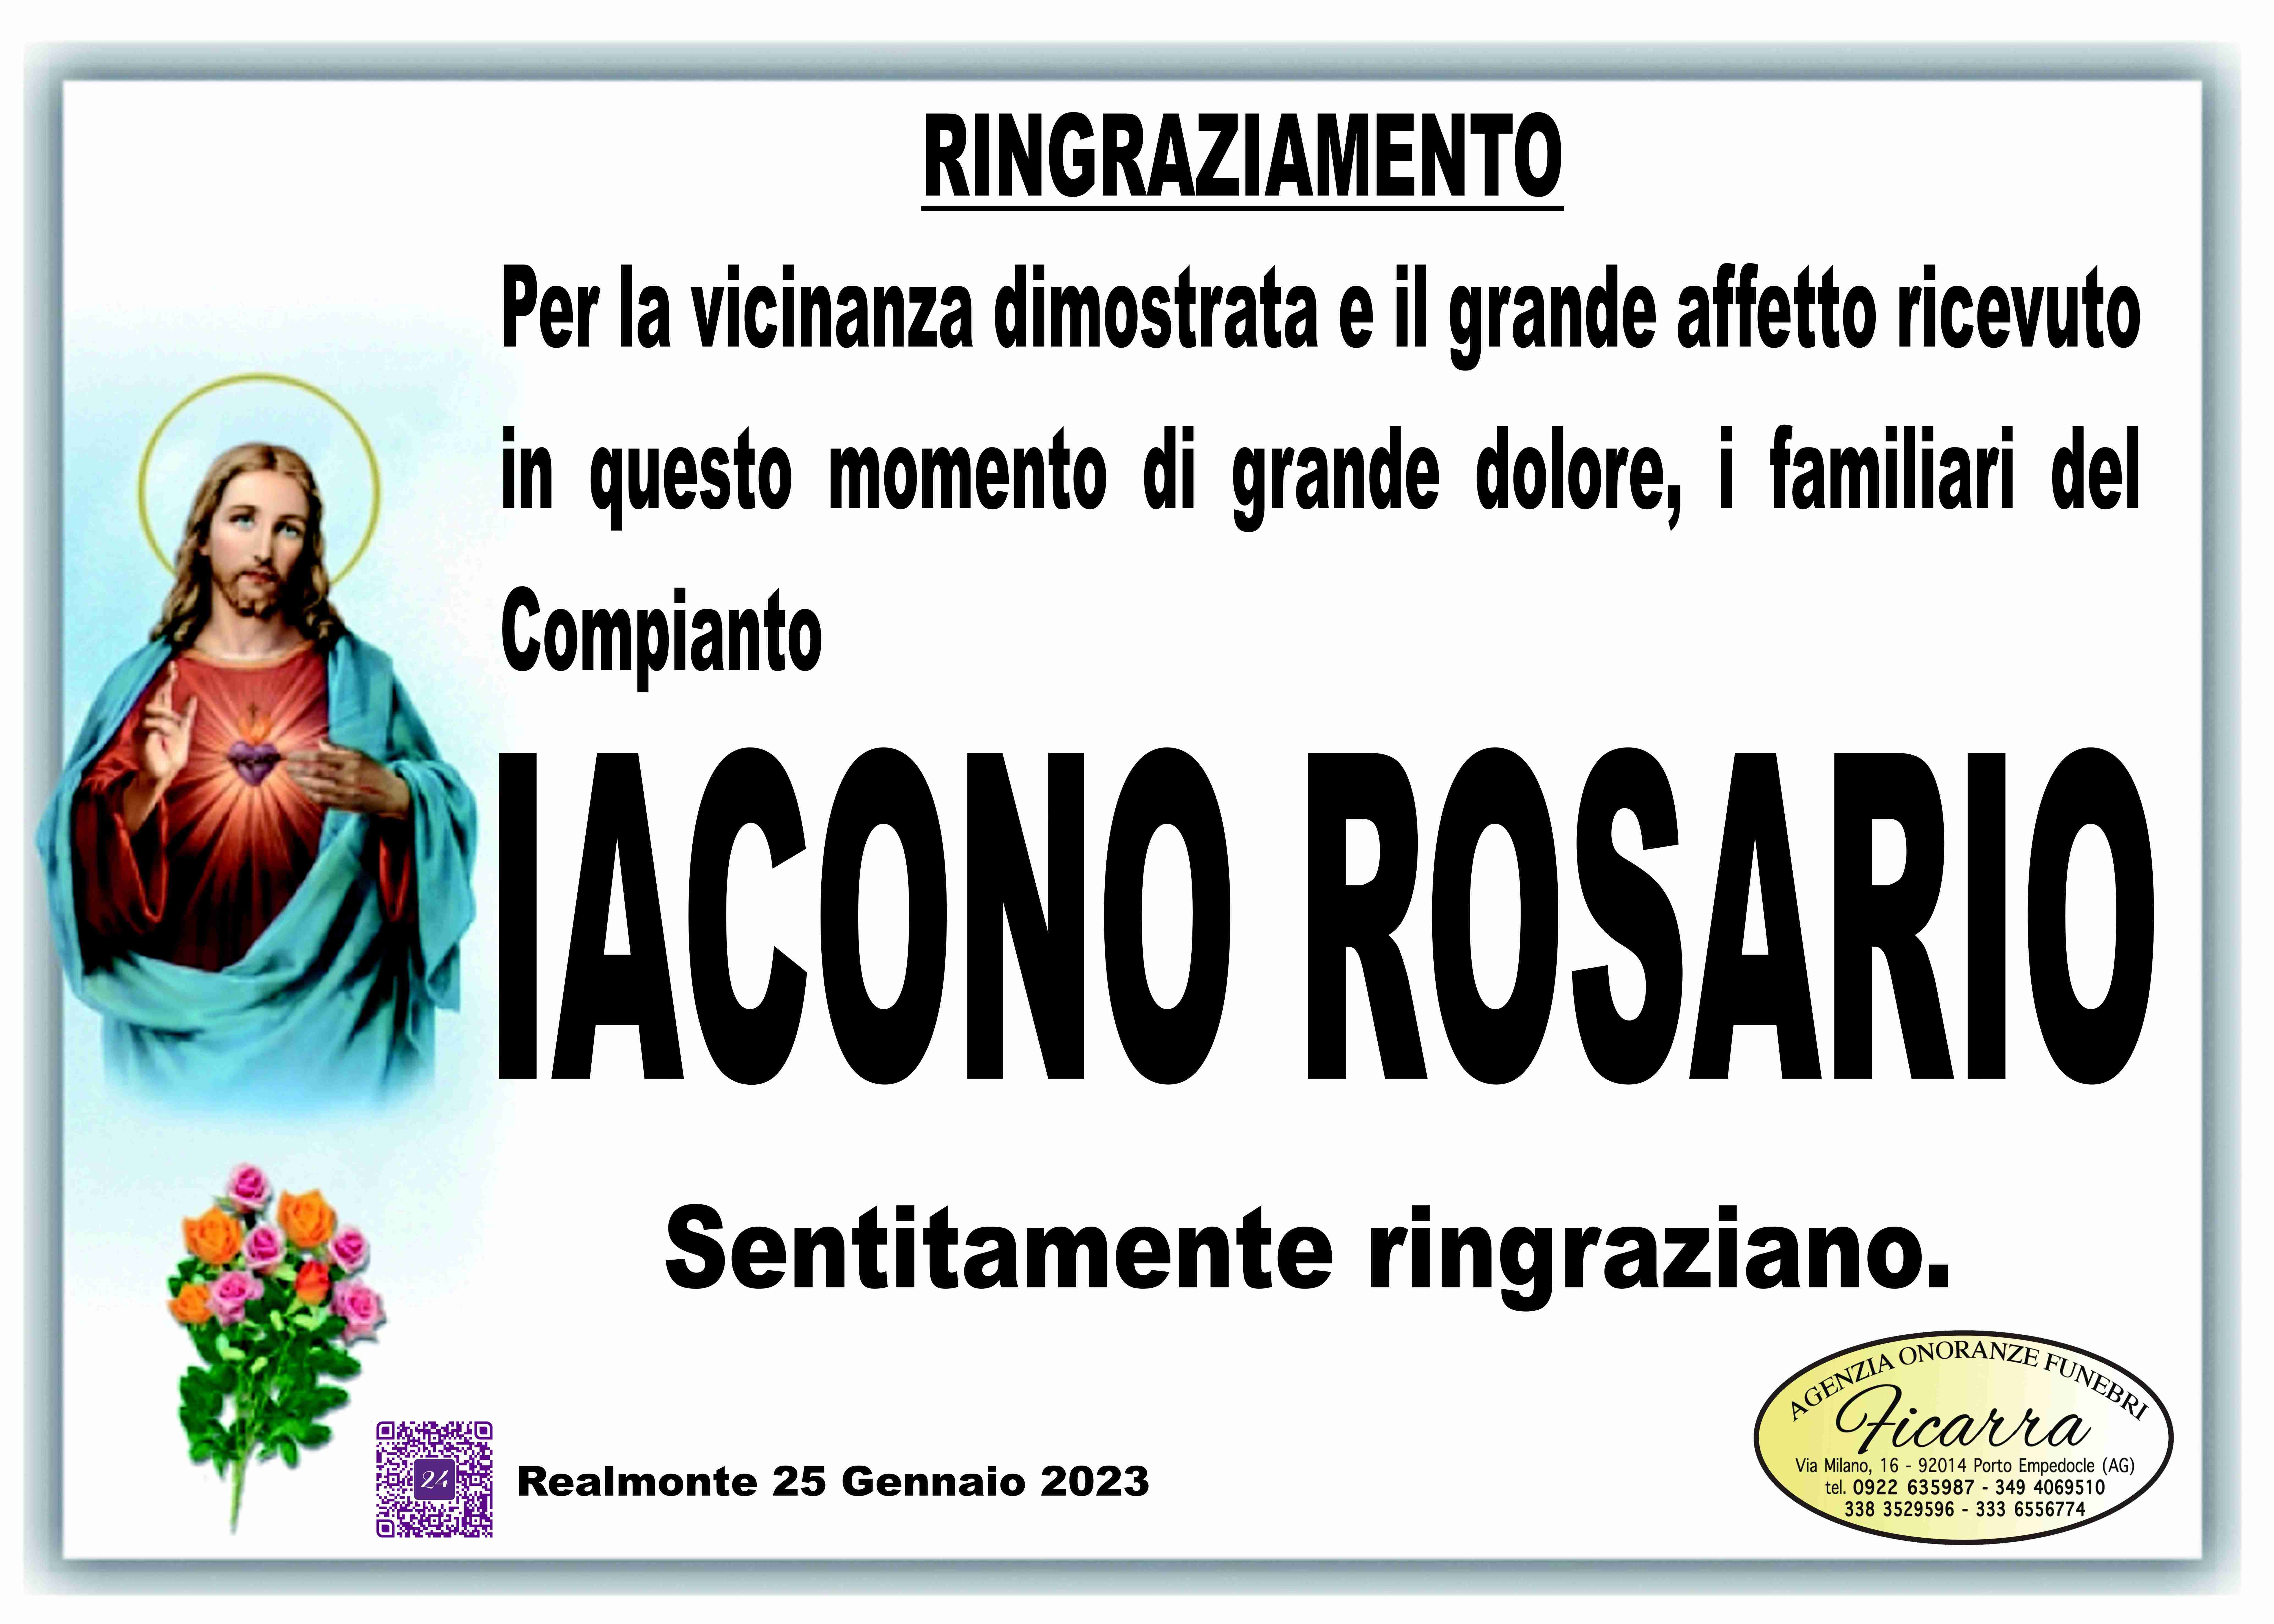 Rosario Iacono